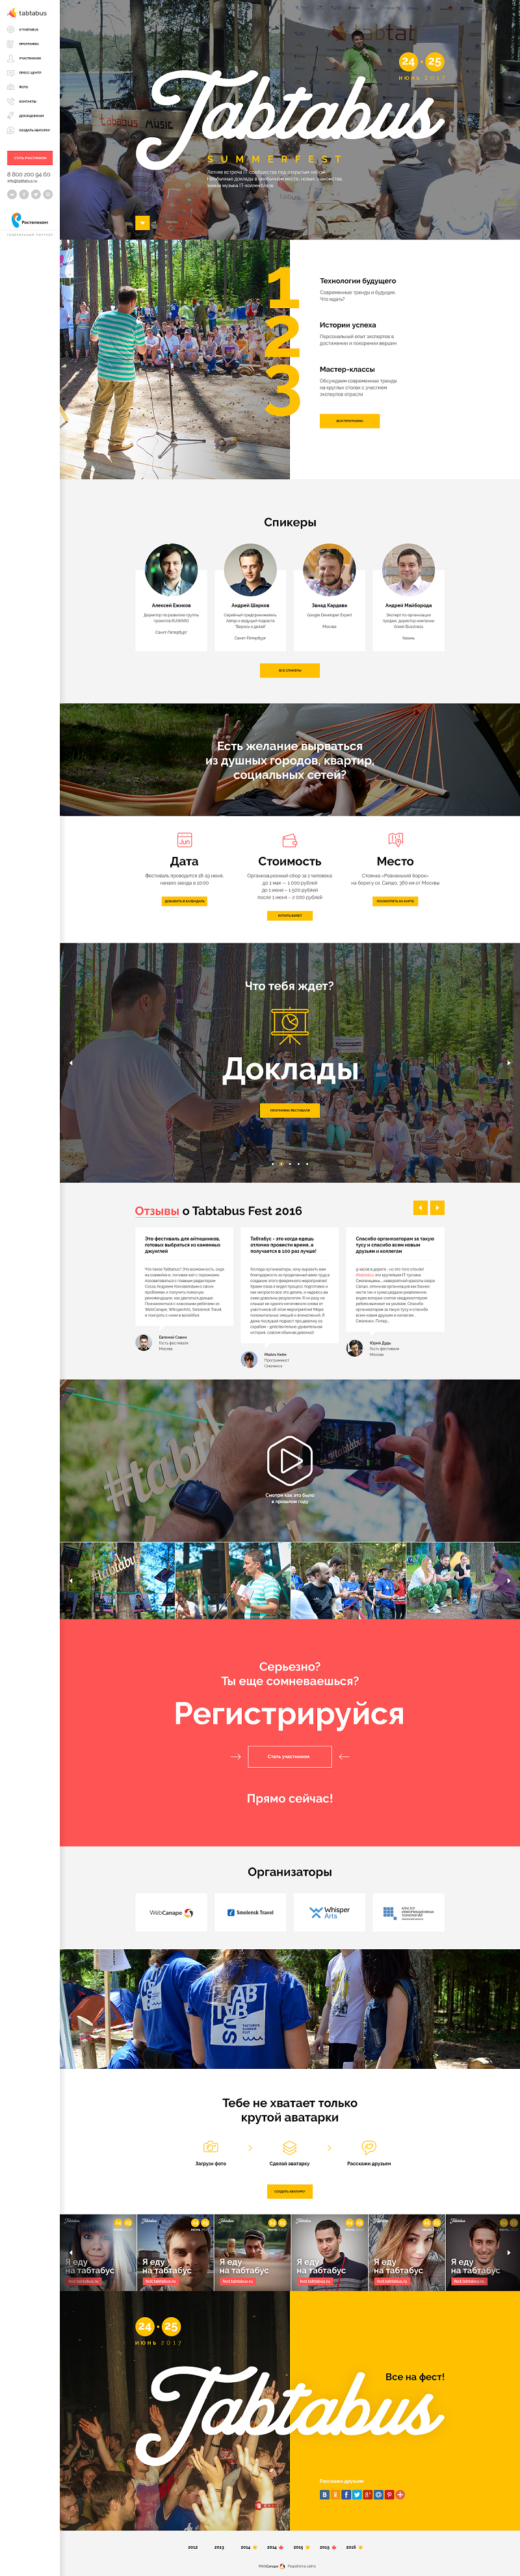 Разработка сайта для летнего фестиваля Табтабус